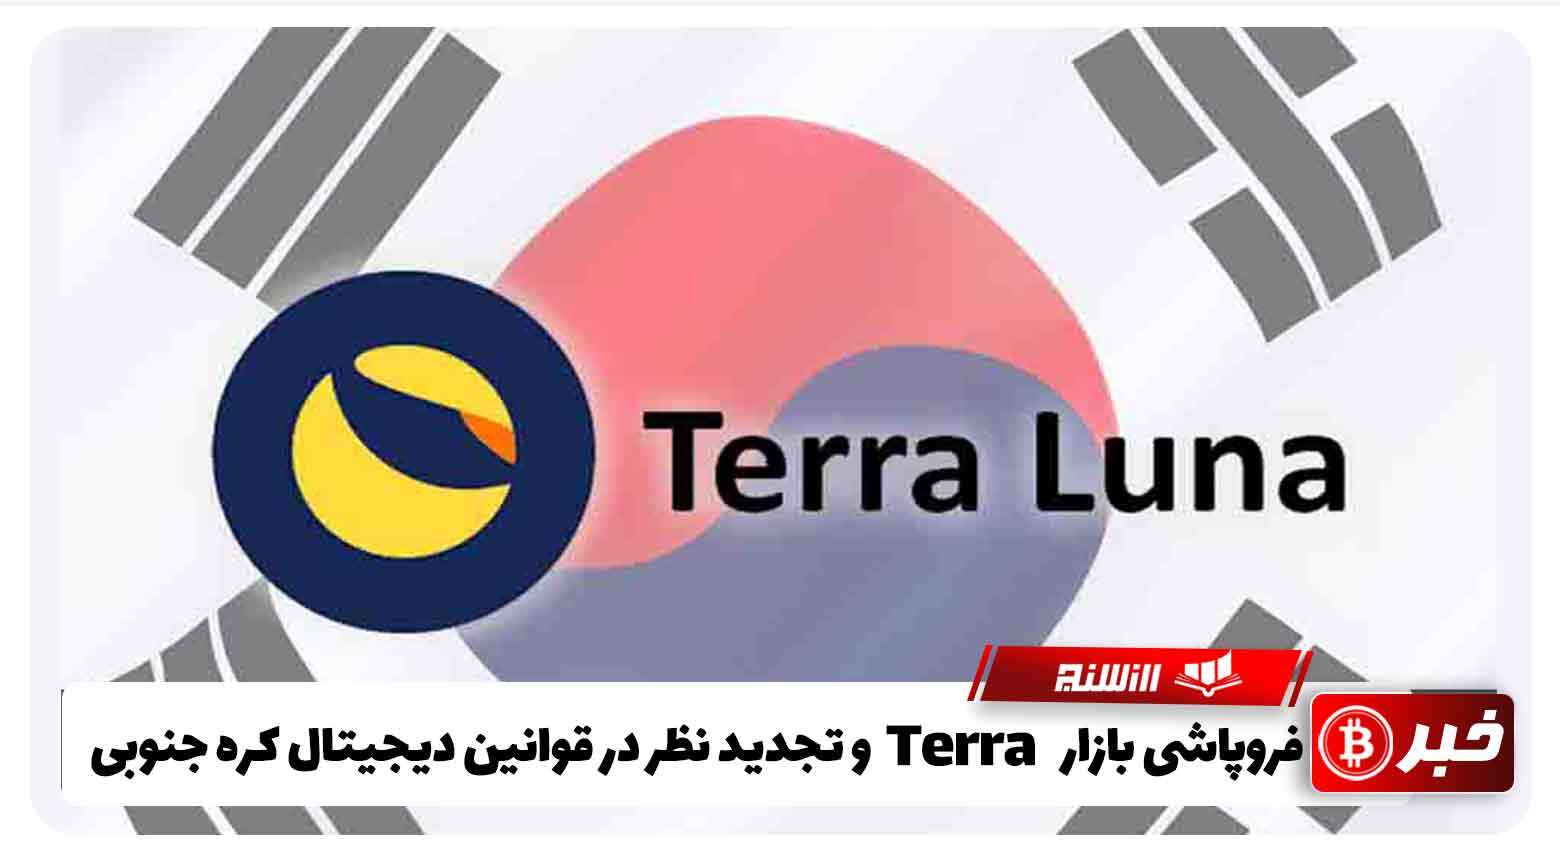 فروپاشی بازار Terra و تجدید نظر در قوانین دیجیتال کره جنوبی